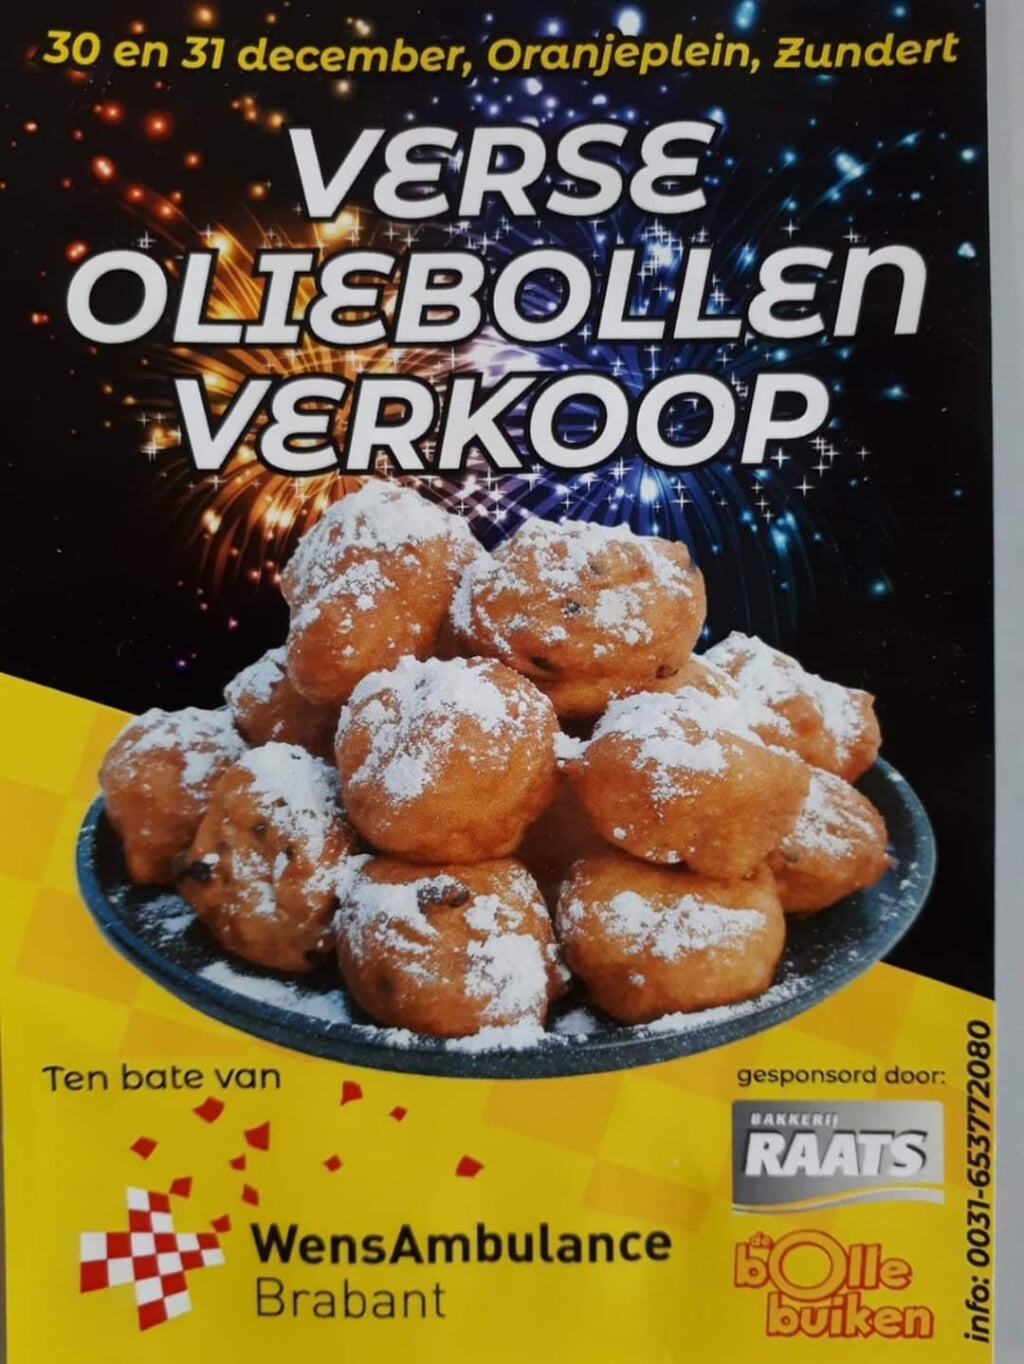 Oliebollen verkoop voor Stichting Wensambulance Brabant